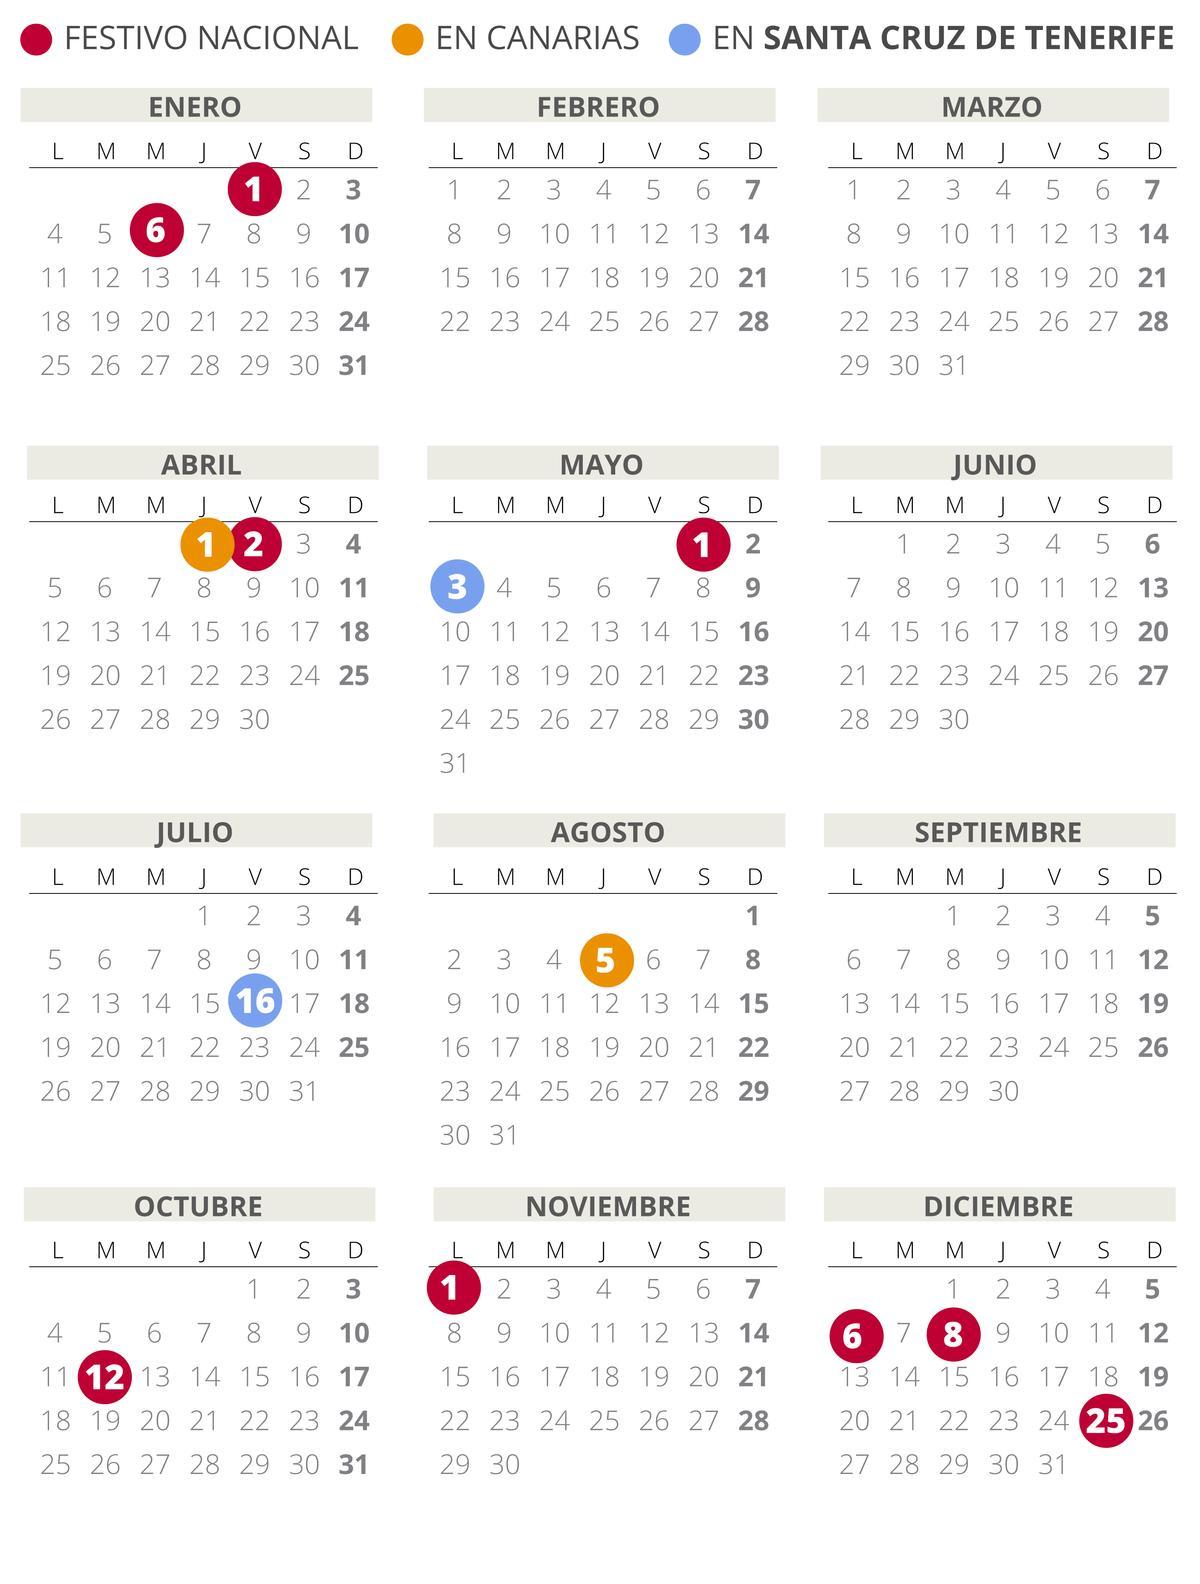 Calendari laboral de Santa Cruz de Tenerife 2021 (amb tots els dies festius)